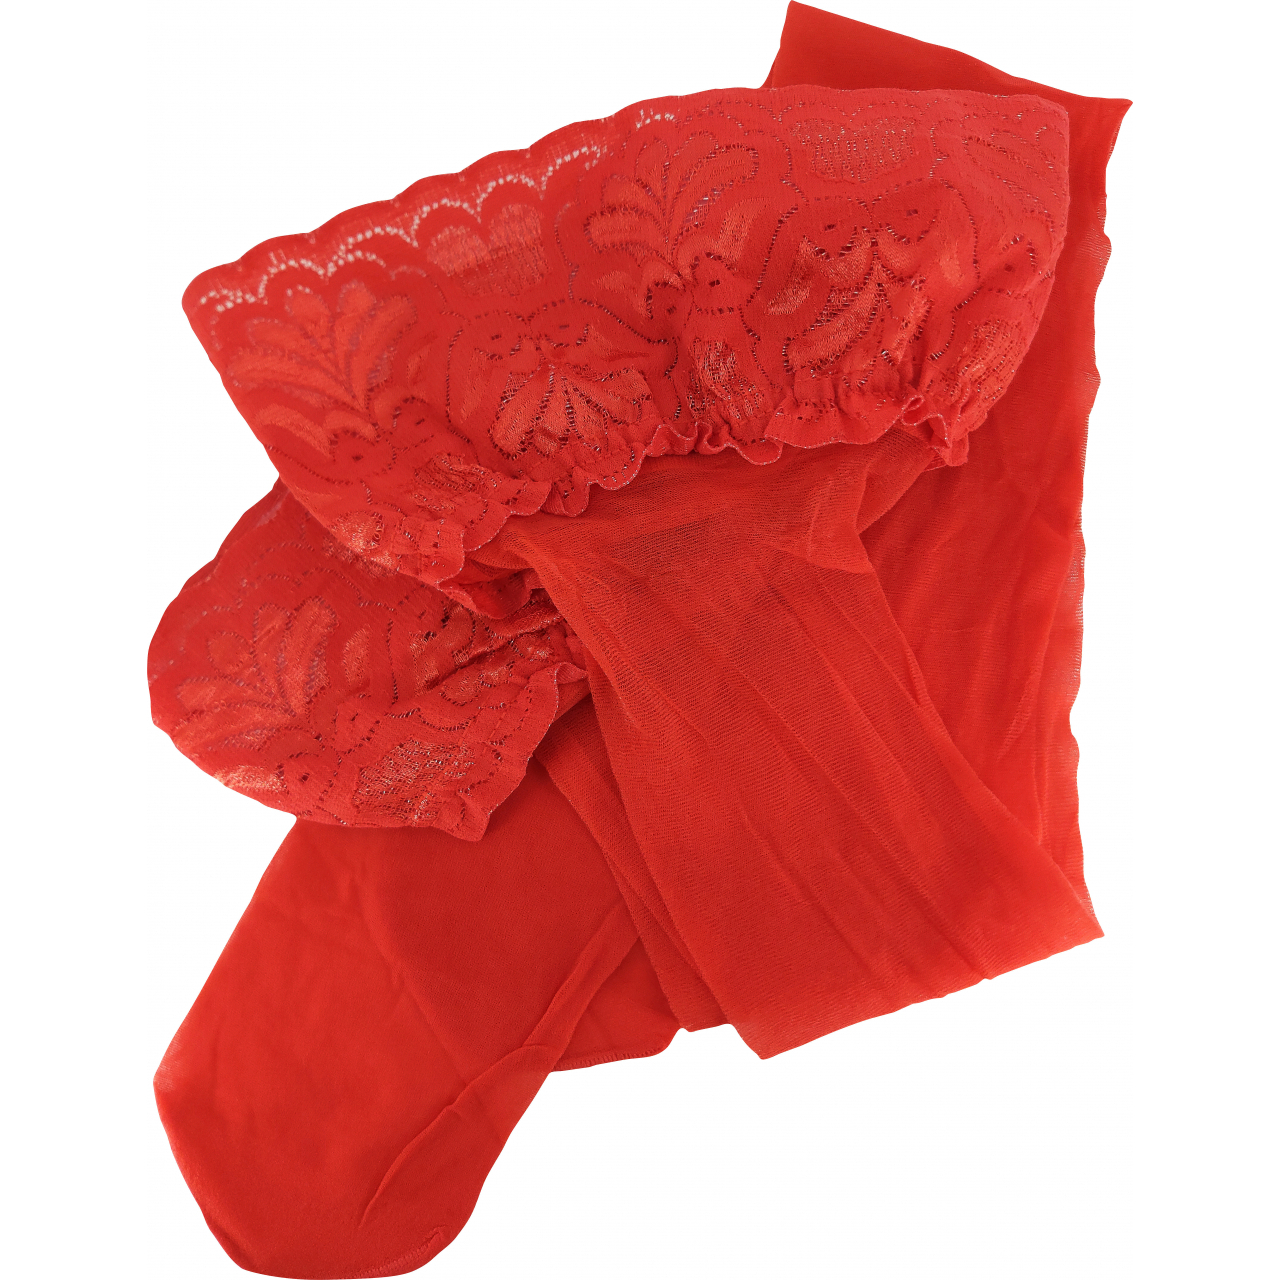 Punčochové kalhoty dámské Lady B LADY hold-ups 20 DEN - červené, S